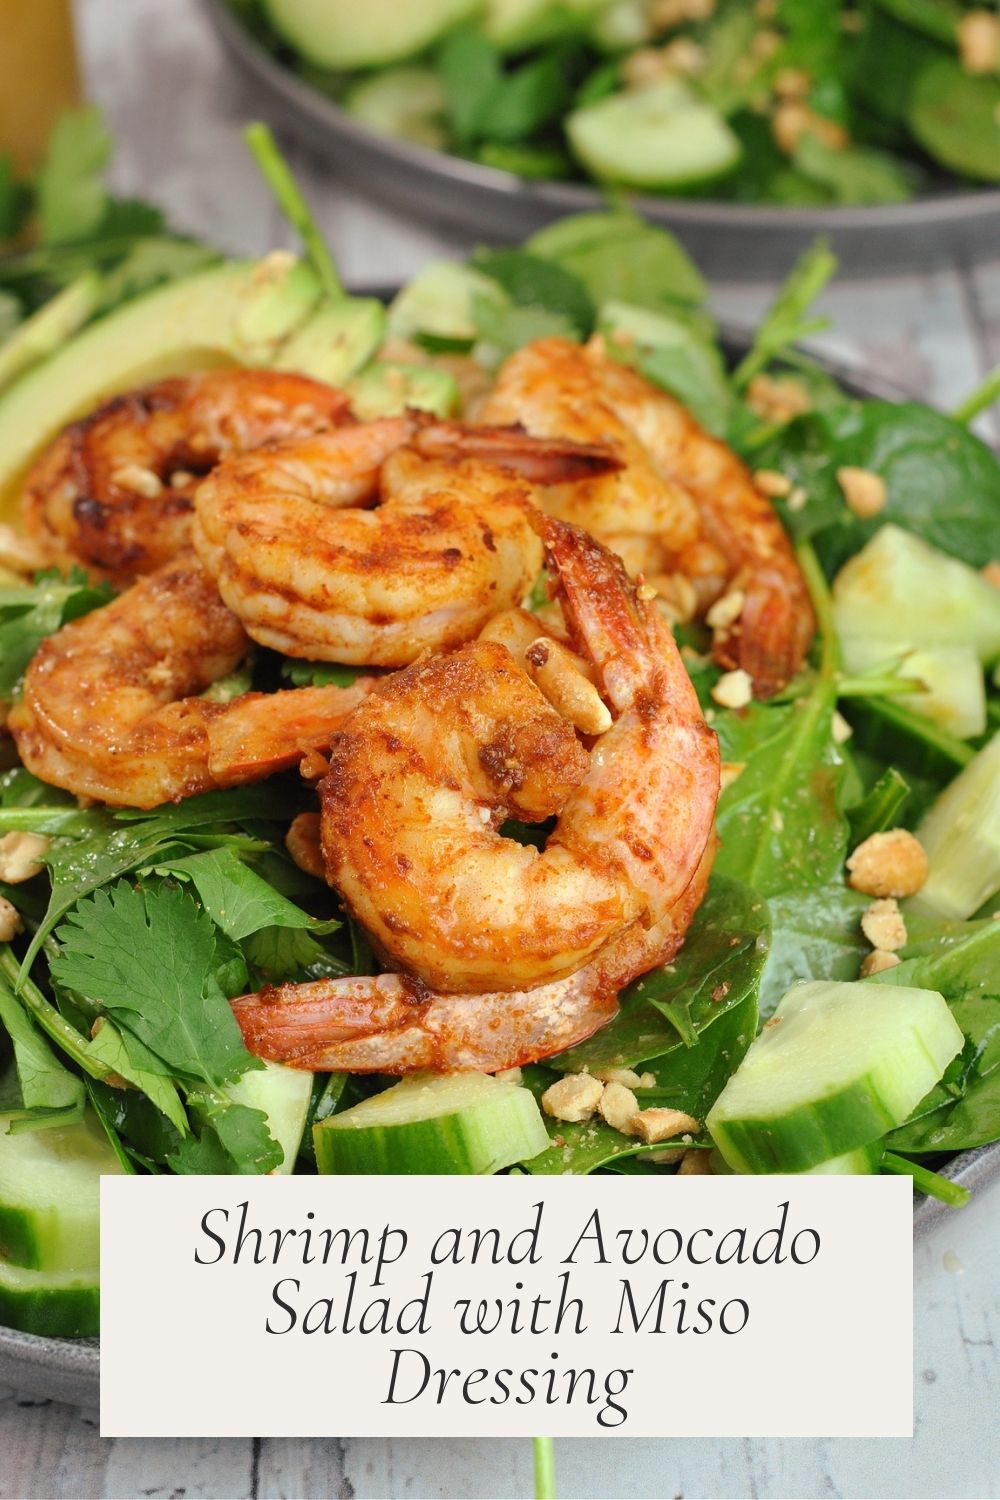 Shrimp and Avocado Salad with Miso Dressing via @preventionrd